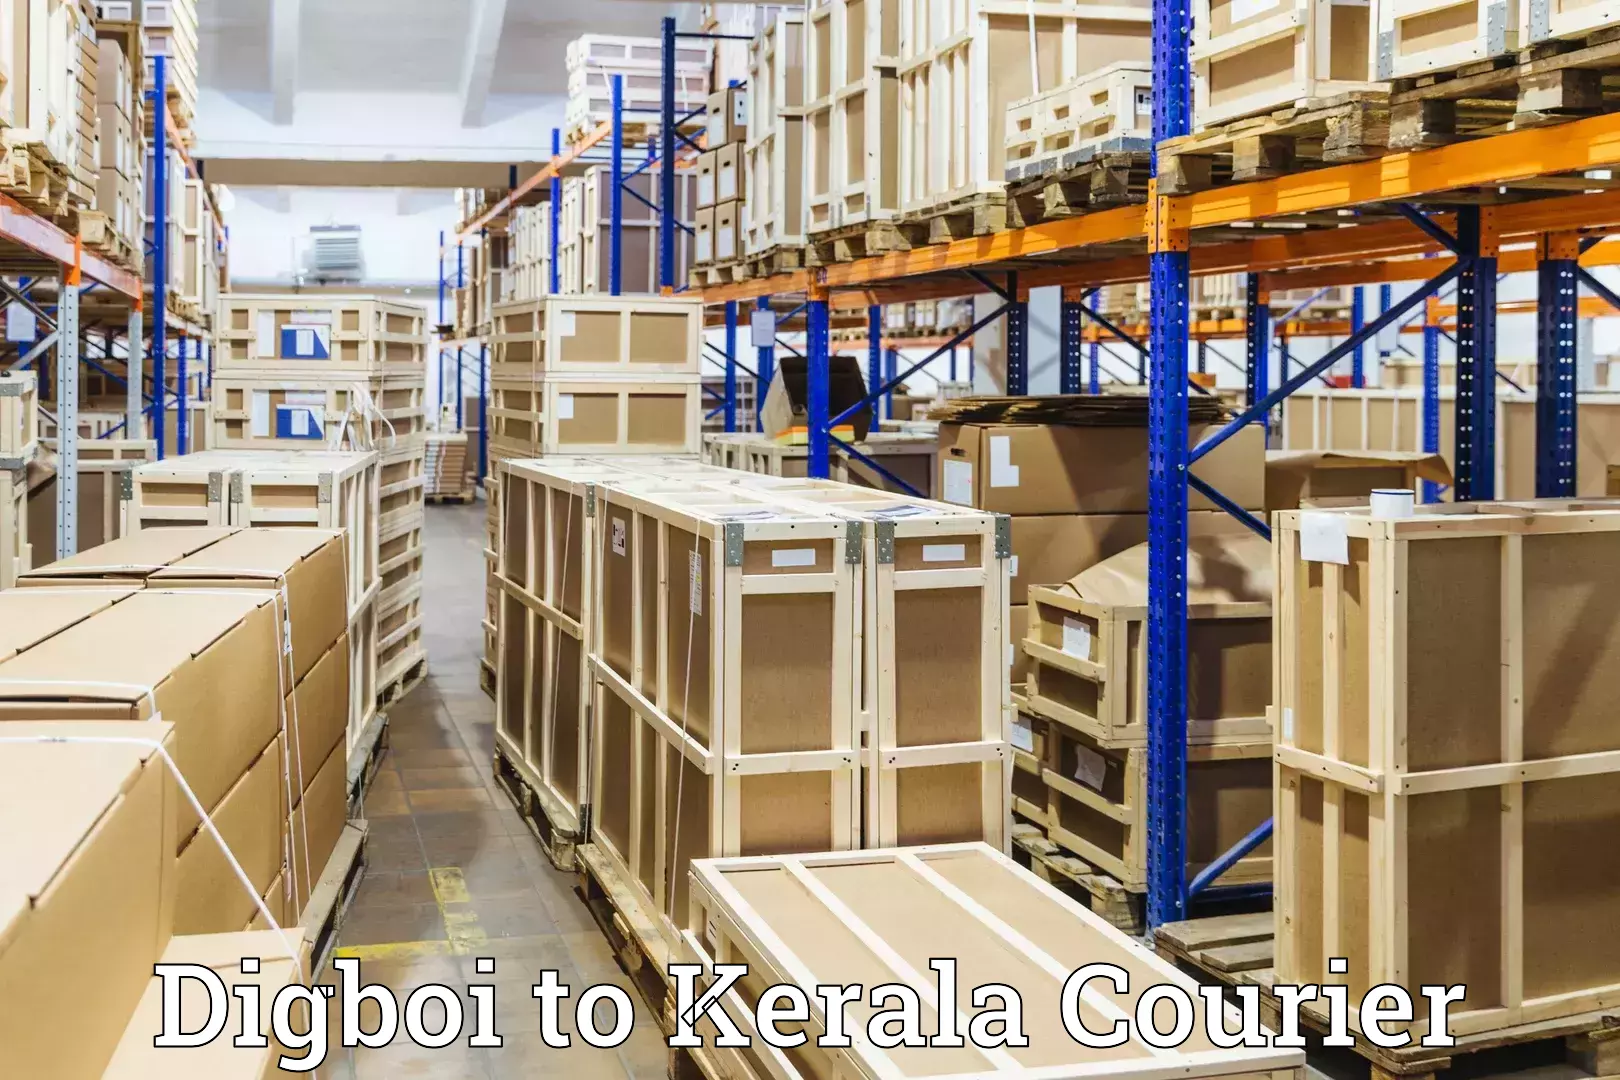 Luggage dispatch service Digboi to Kerala